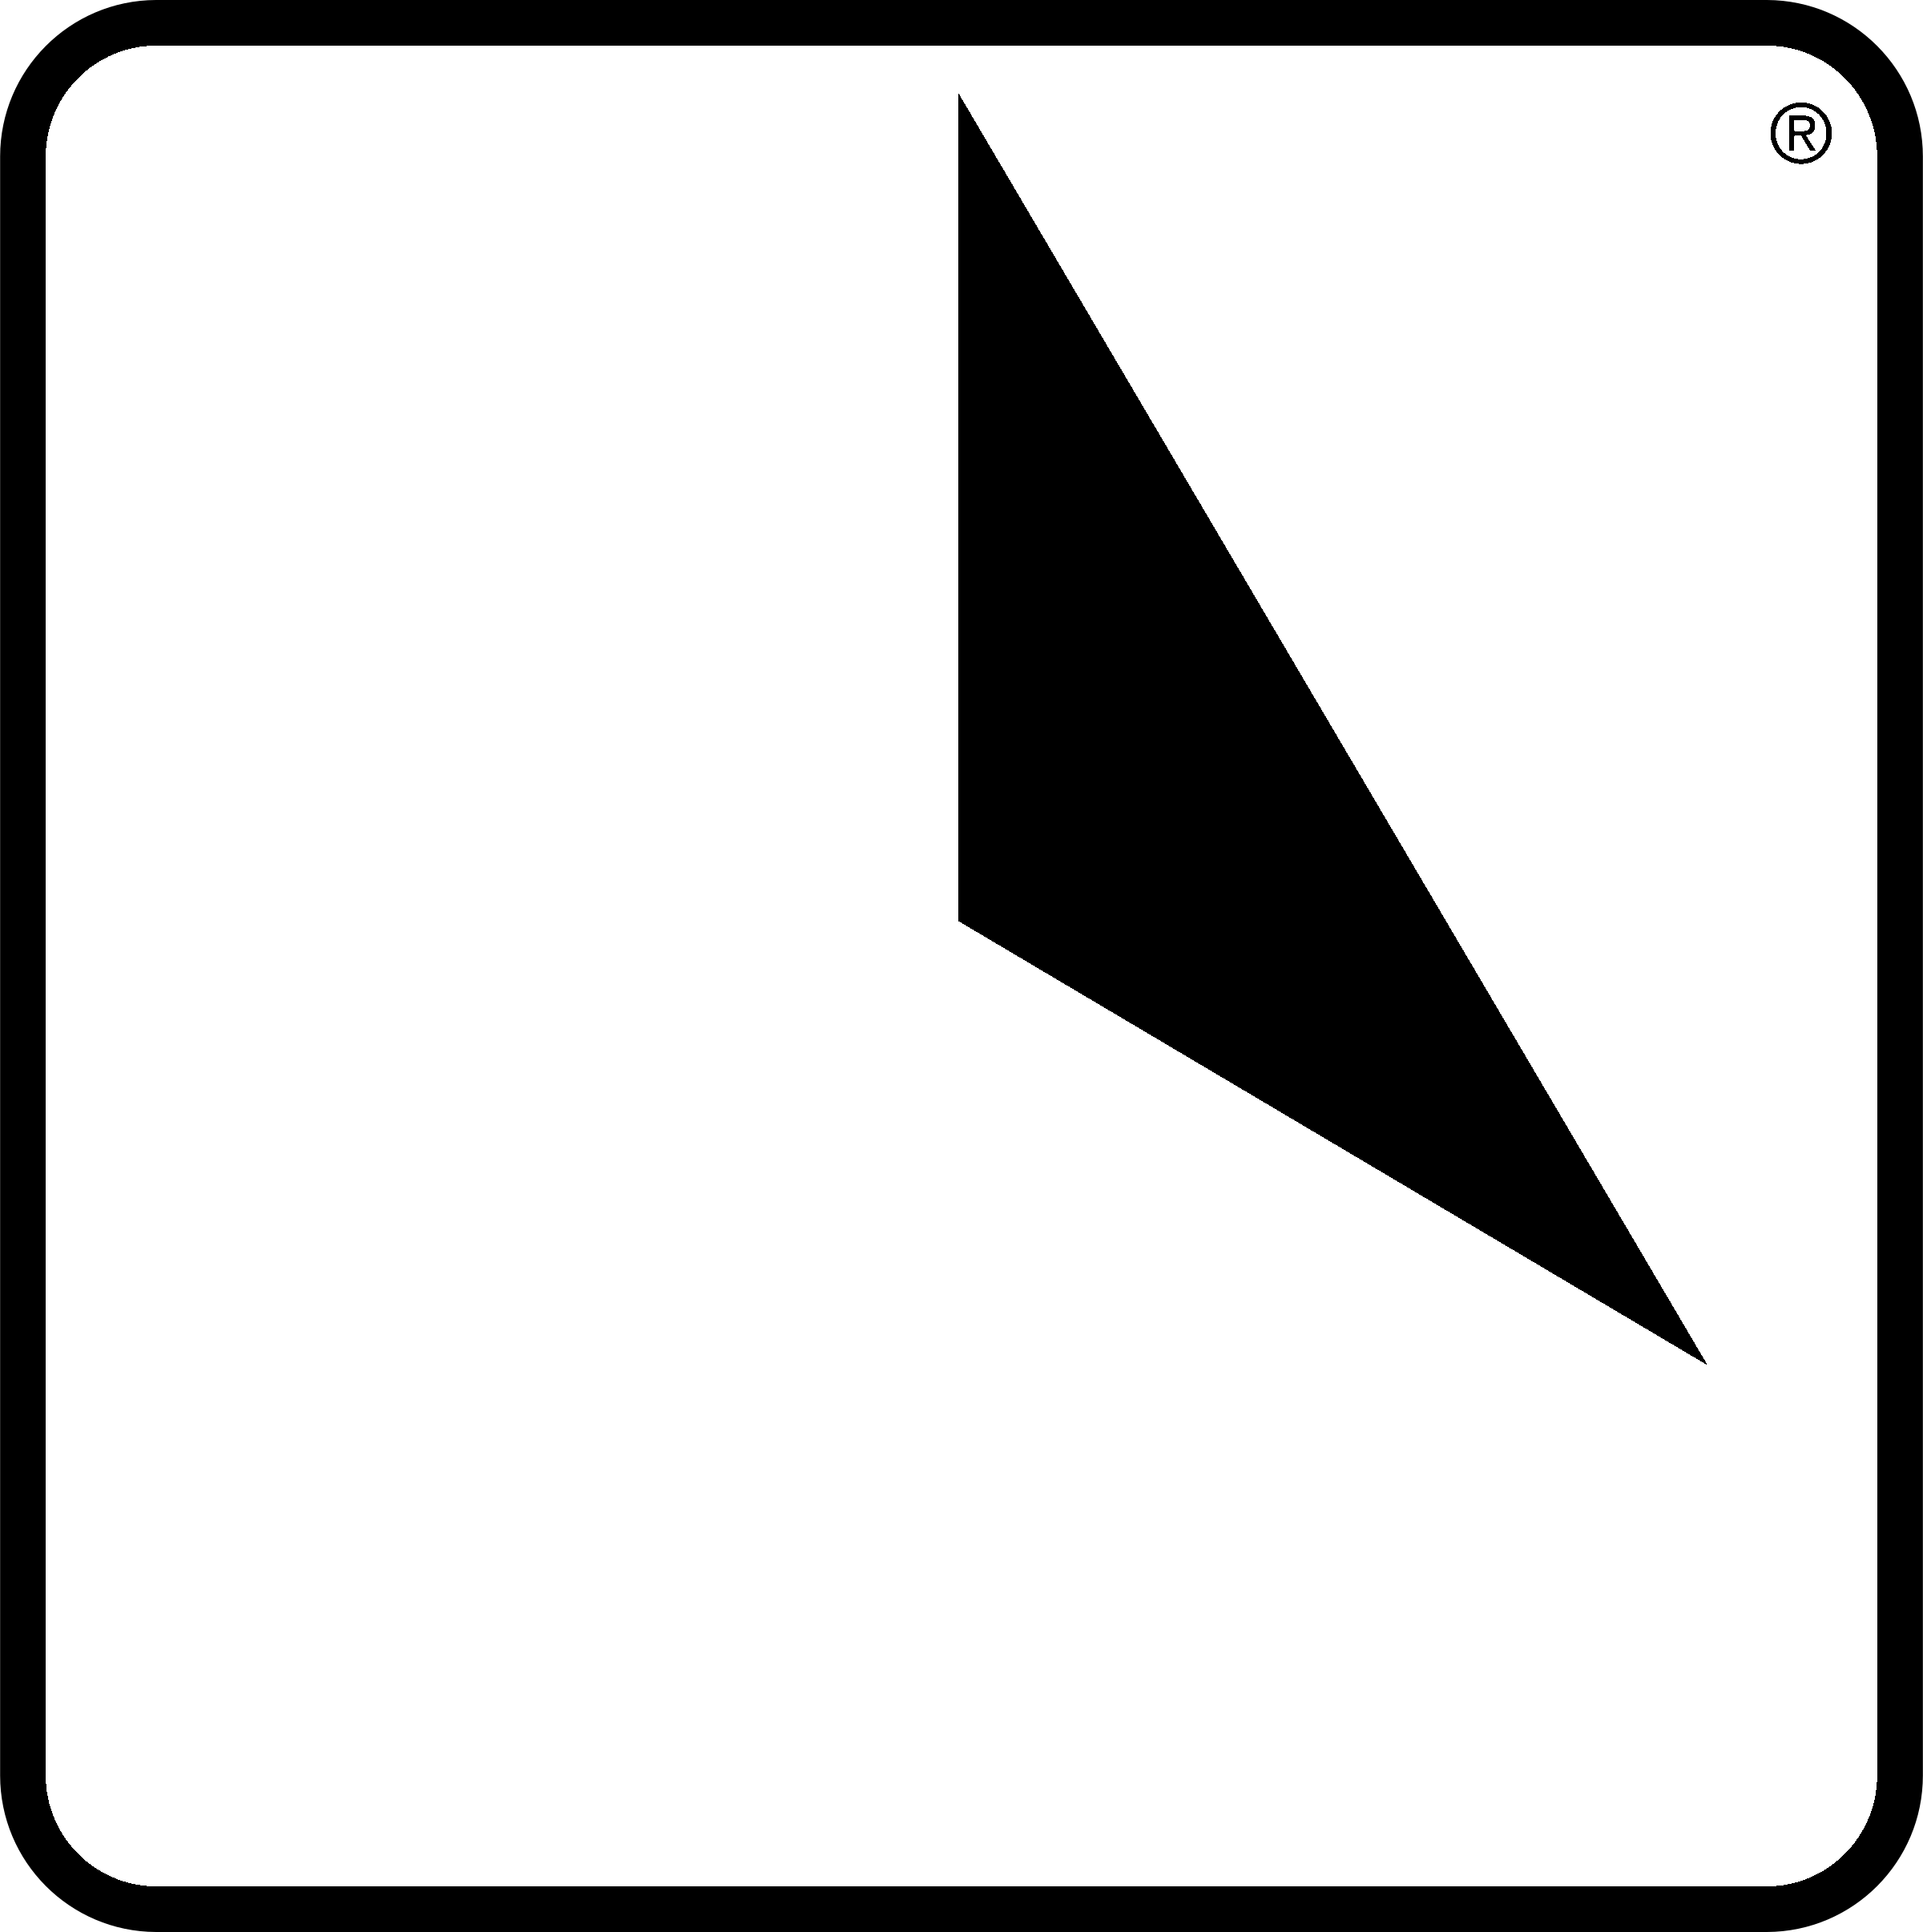 Citgo Logo - CITGO PETROLEUM 1 Logo PNG Transparent & SVG Vector